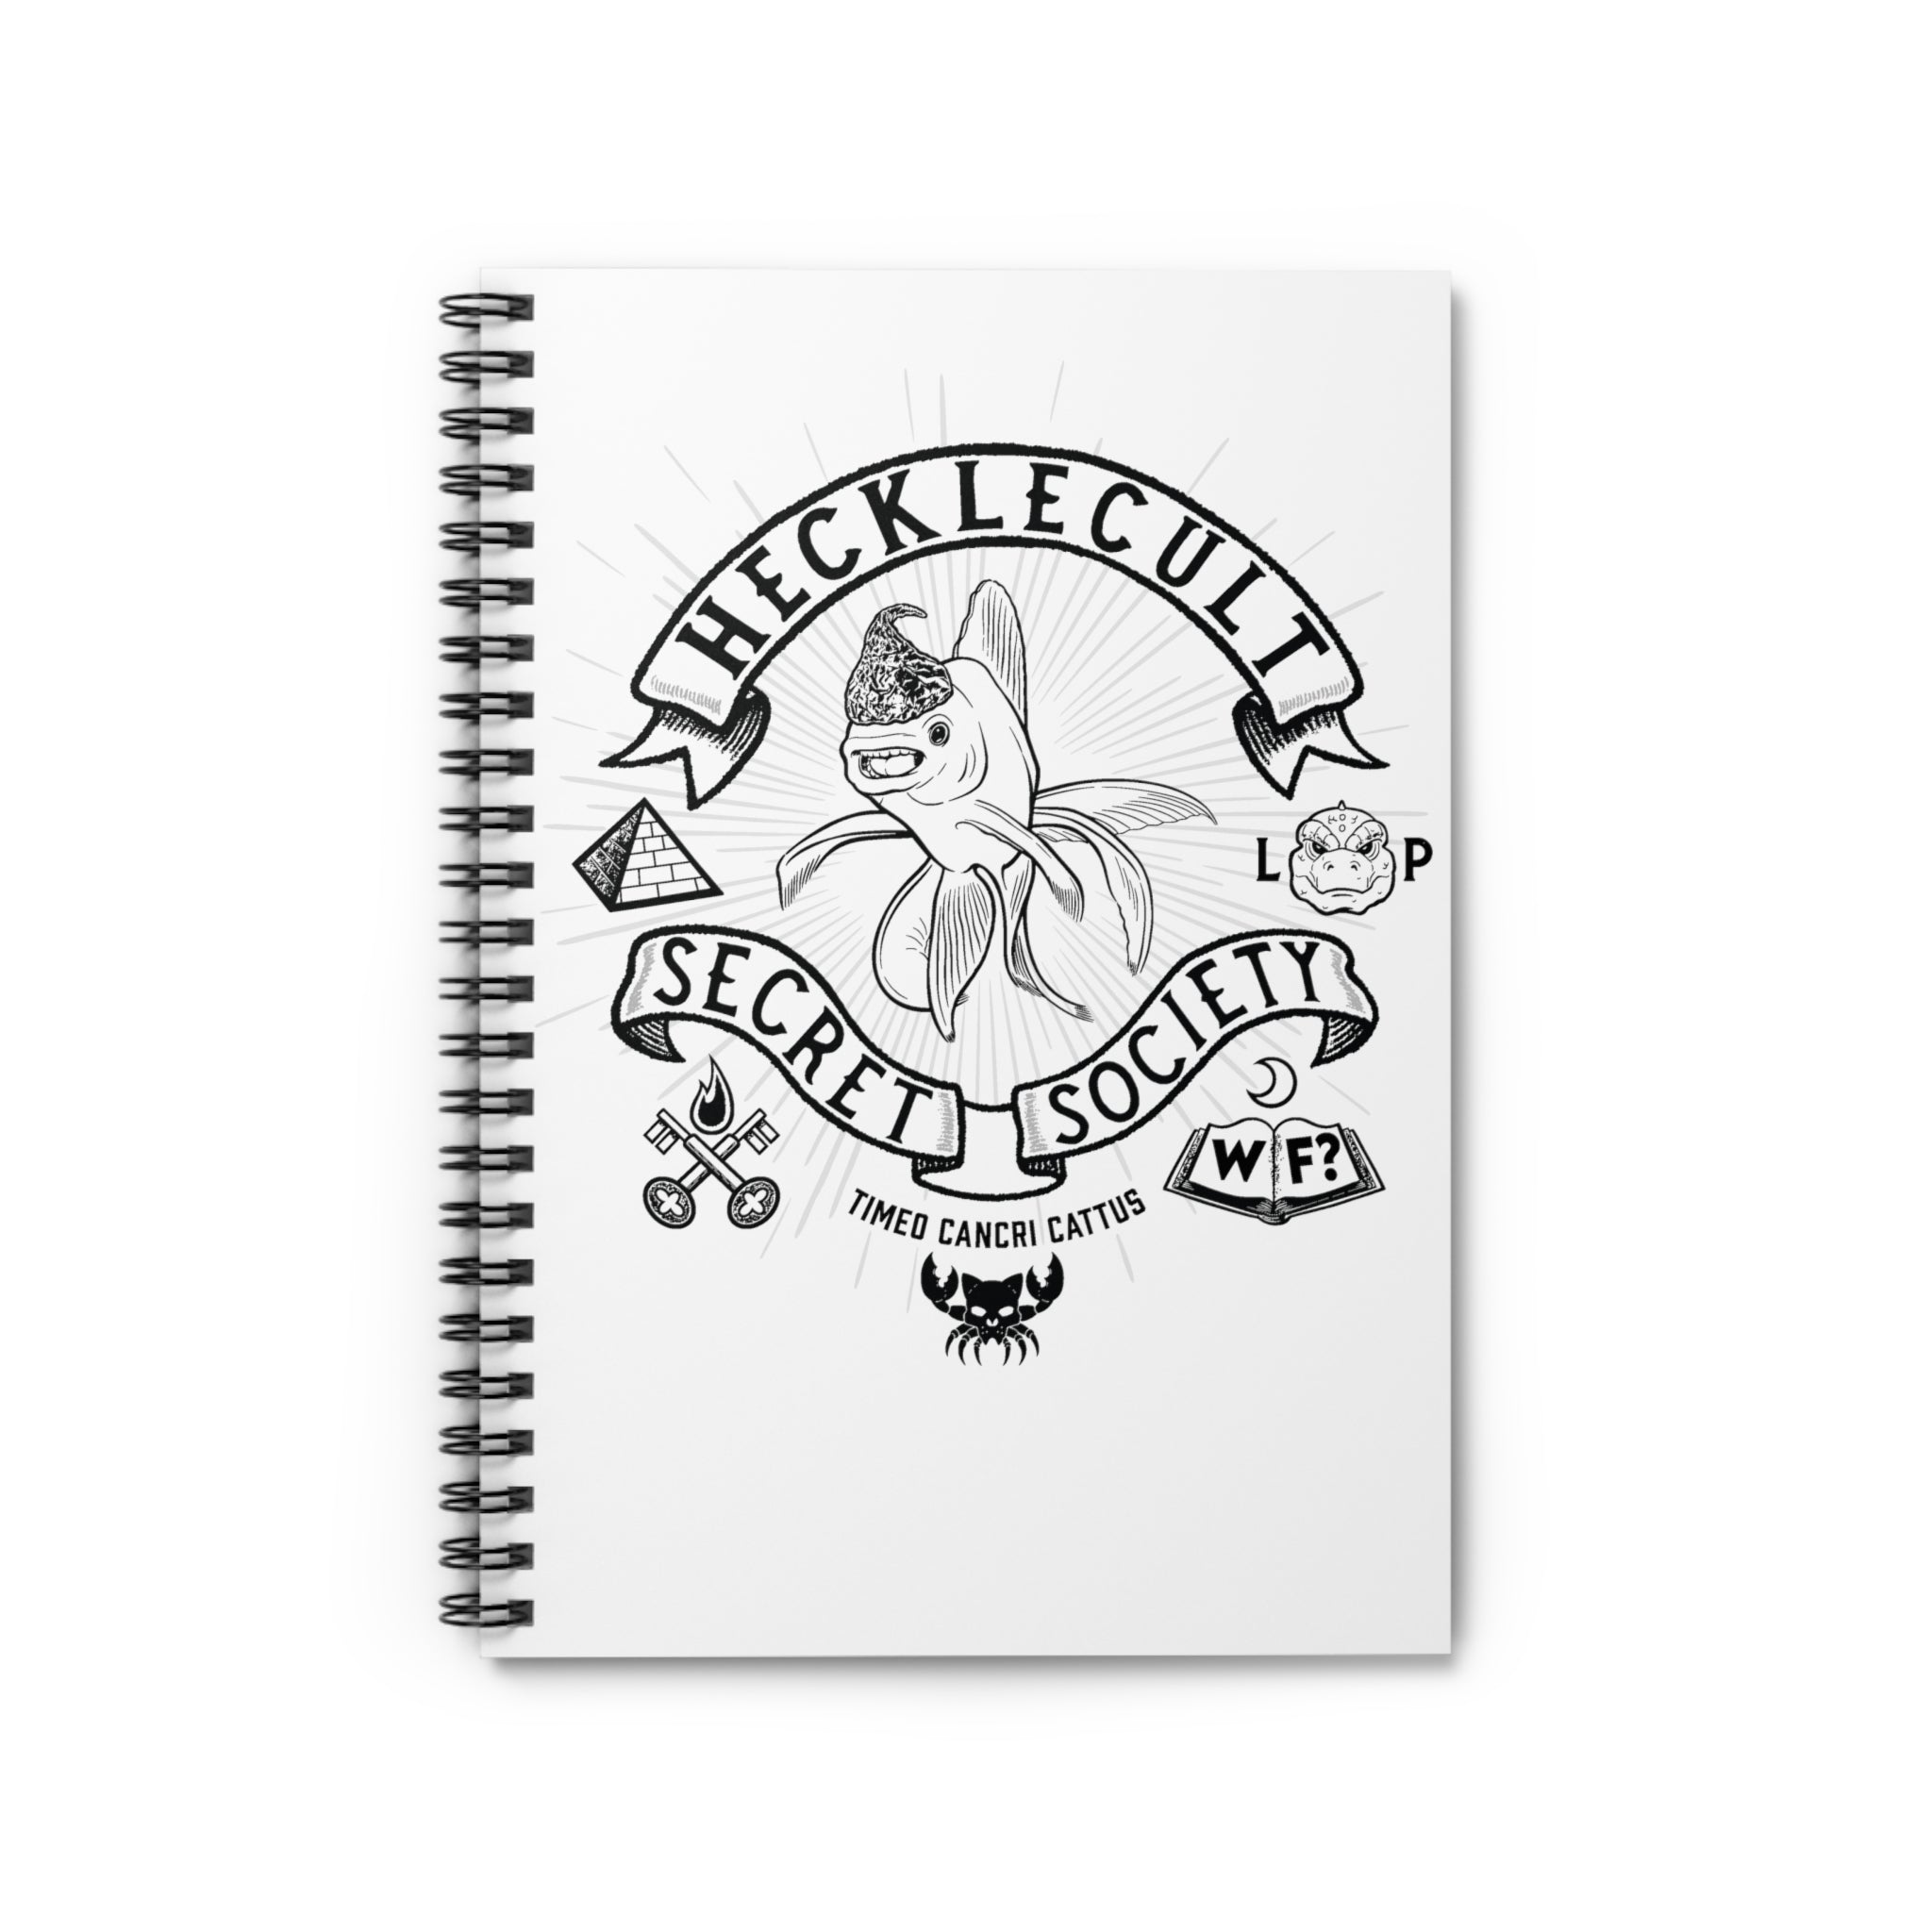 Hecklecult Spiral Notebook - Ruled Line - 0